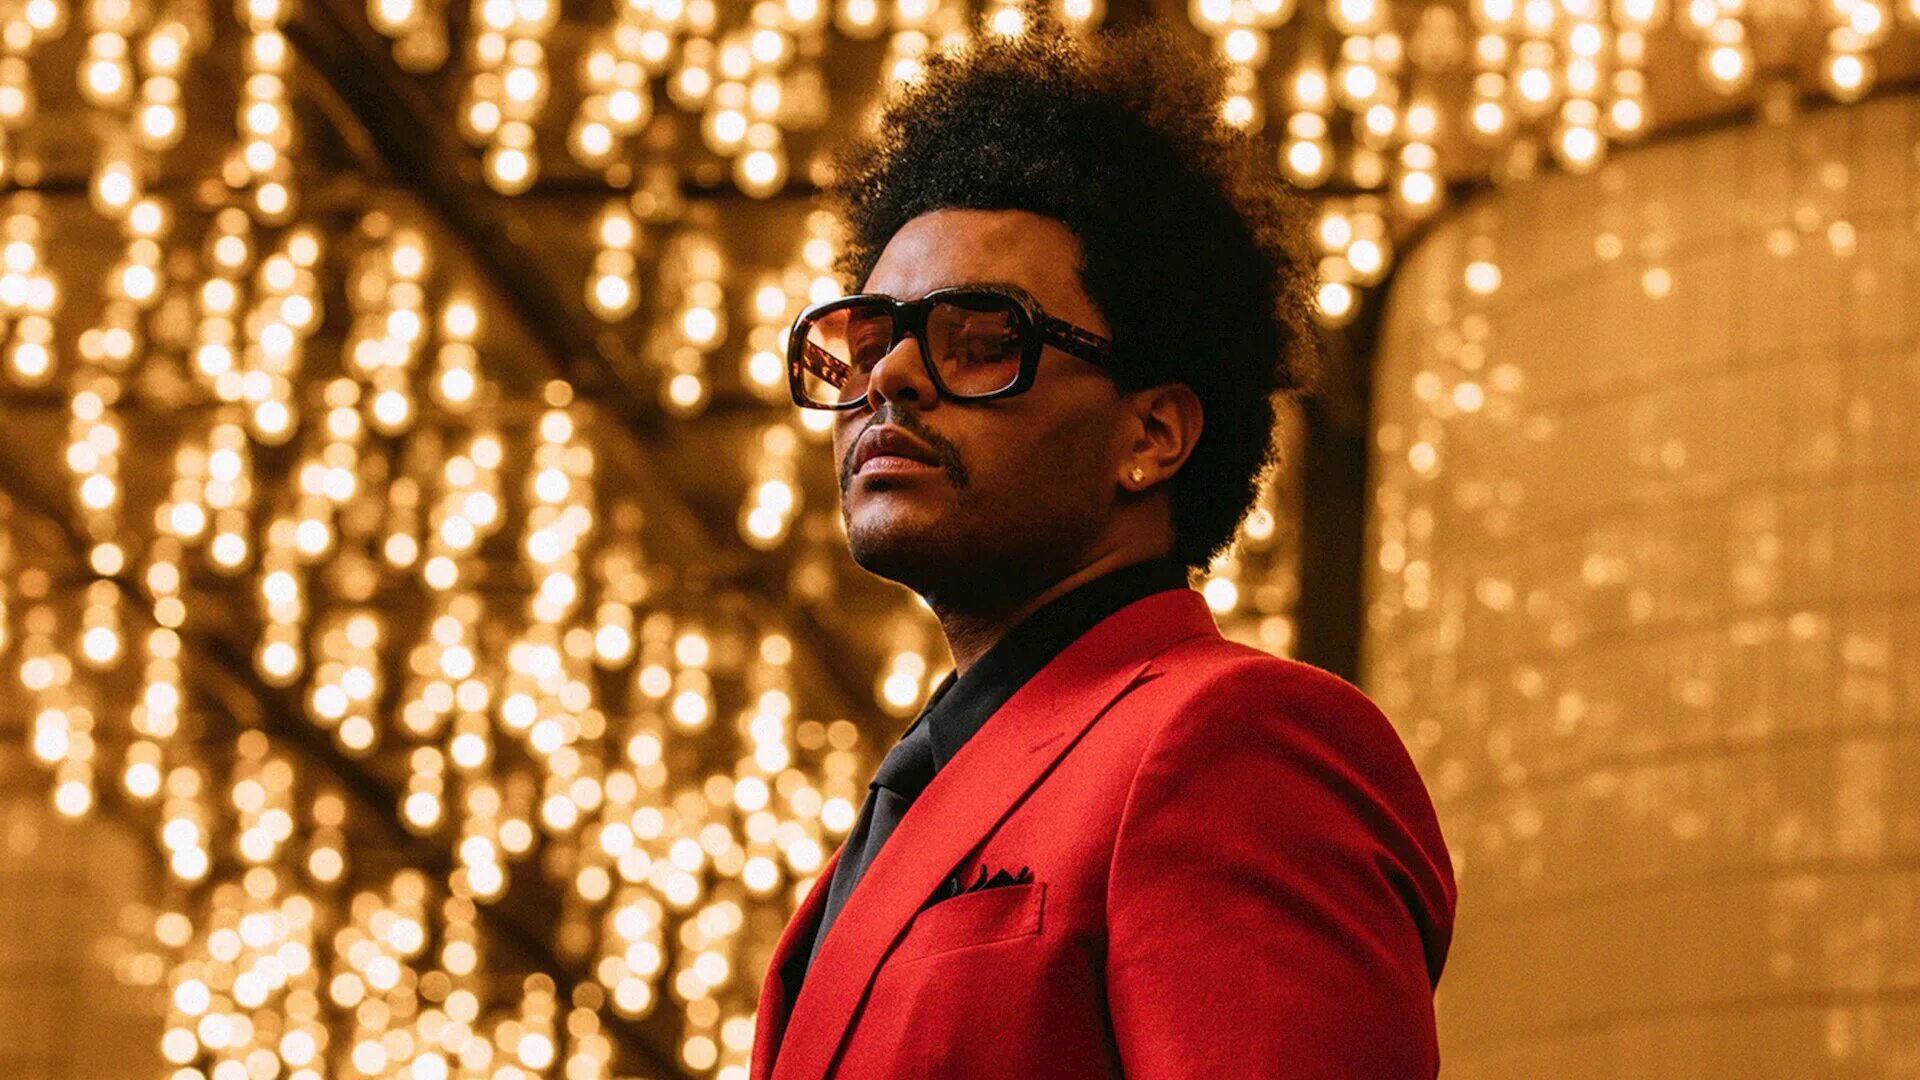 The Weeknd. Weekend. Weekend певец. The Weeknd Blinding Lights. Самый популярные клипы 2020